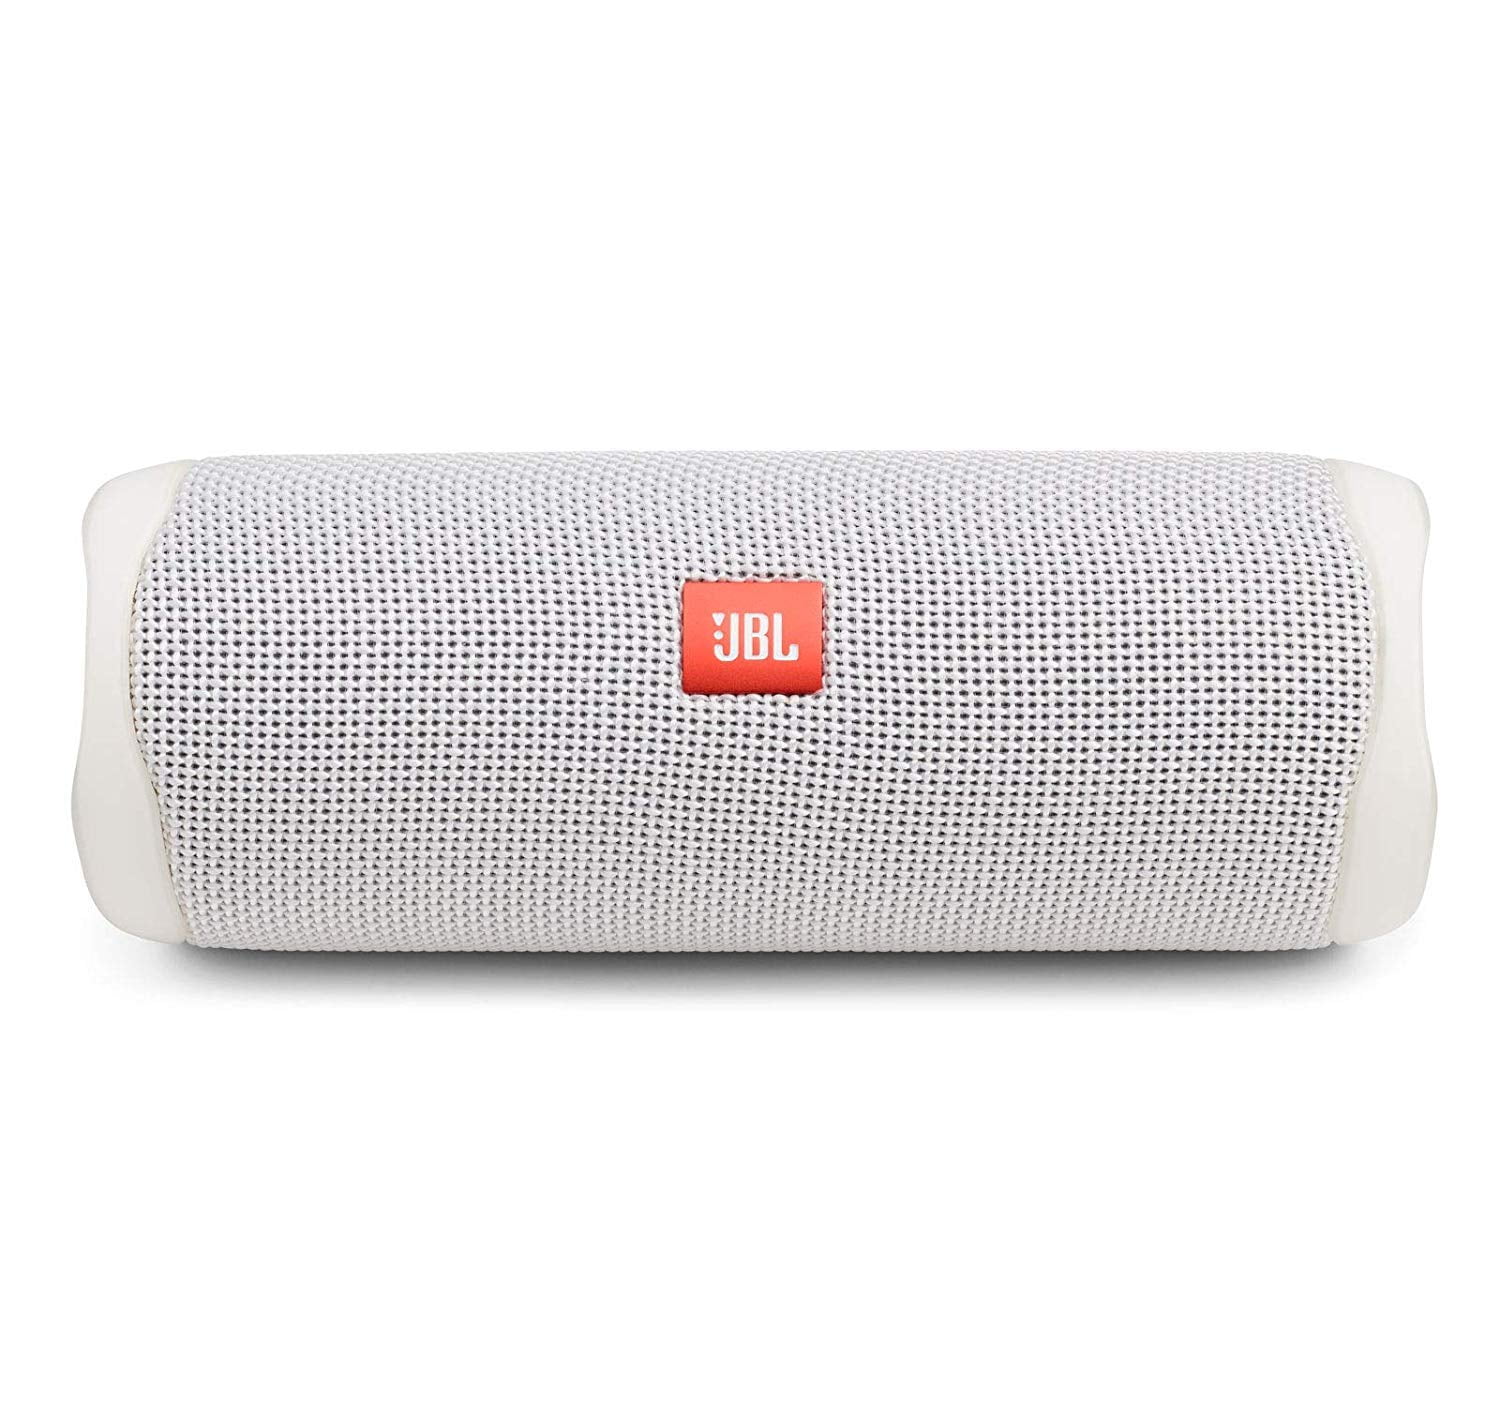 JBL Flip 5 White Portable Bluetooth Speaker (Open Box)